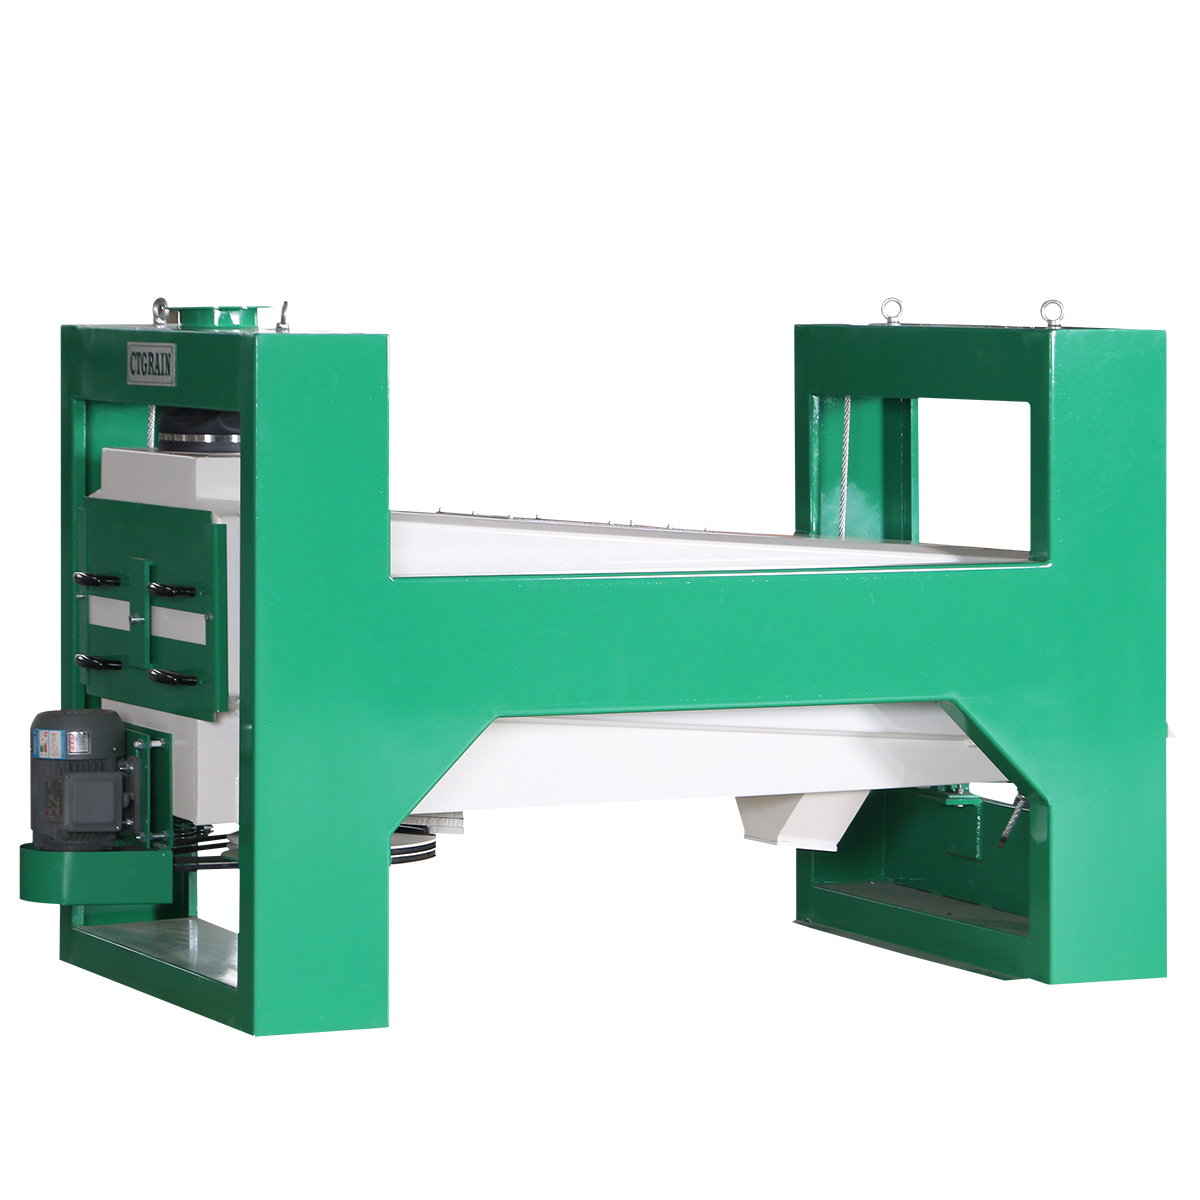 Well-designed Standard Rotary Aspirator – Grain Cleaning Machine Rotary Aspirator – Chinatown